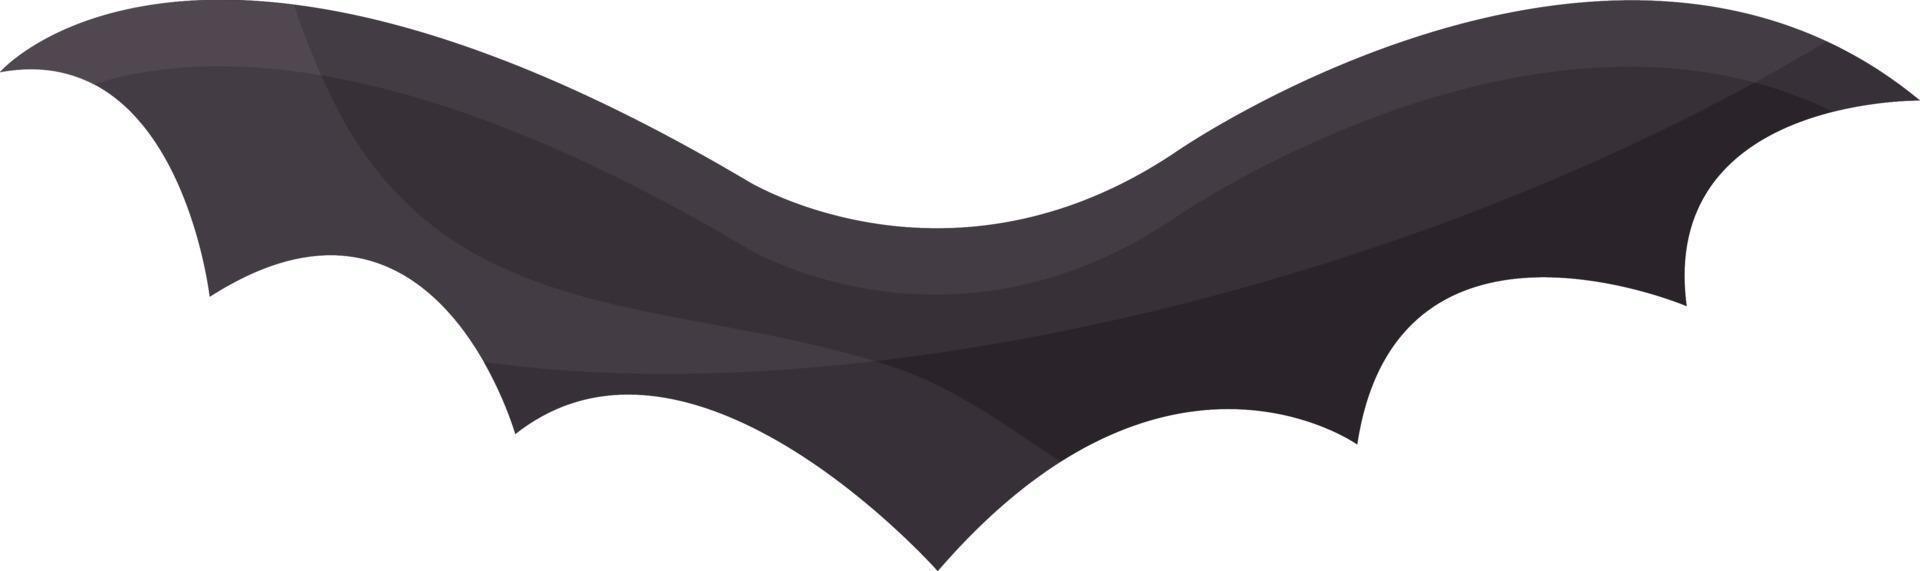 ilustração simples de uma silhueta de morcego, morcego preto, halloween, clipart vetorial, sem fundo vetor